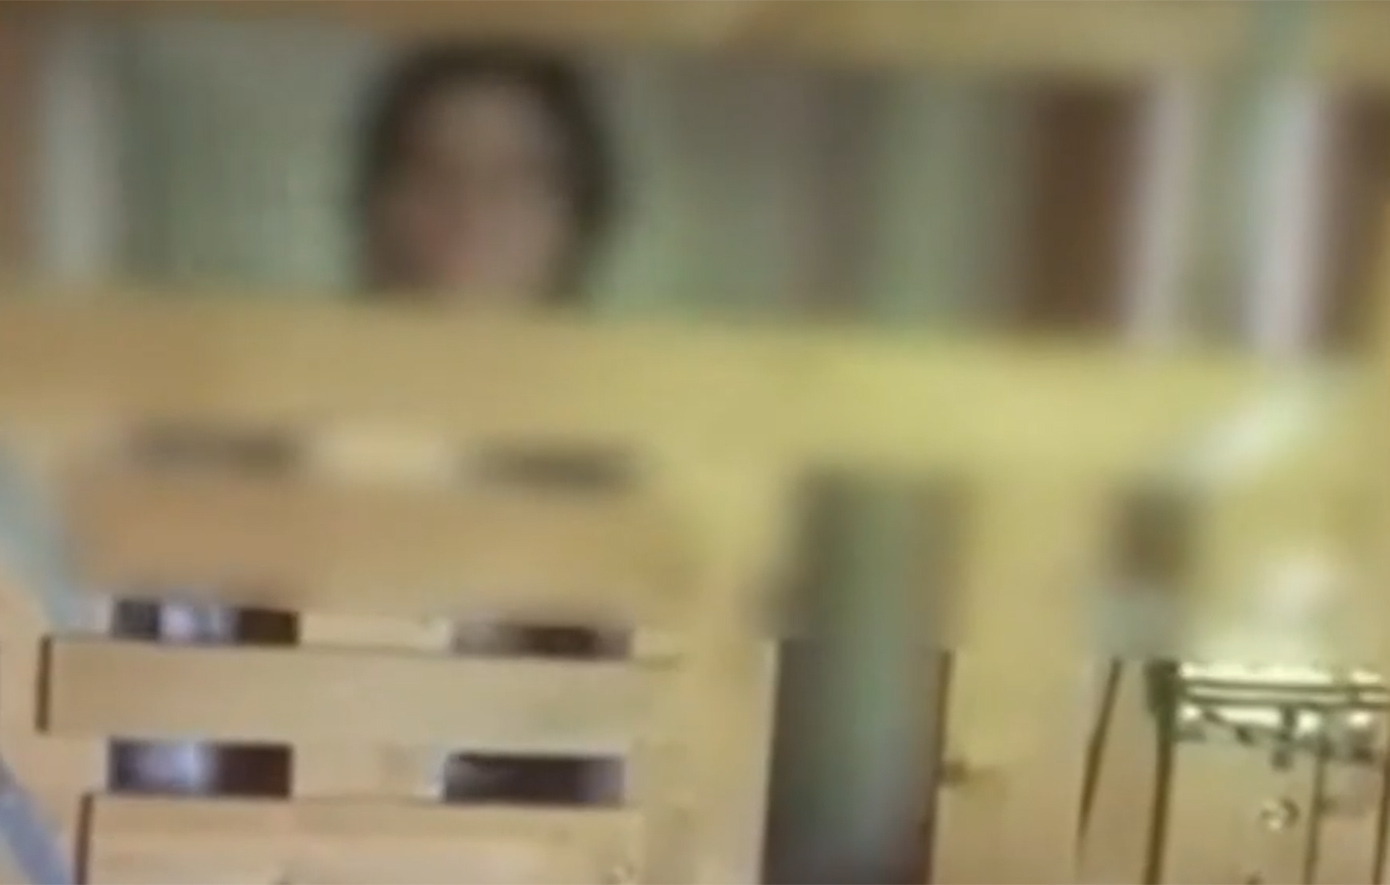 Νέα υπόθεση που θυμίζει «Κωσταλέξι» στην Καλαμάτα – 29χρονη είναι κλεισμένη σε κλουβί μέσα στο σπίτι της οικογένειας